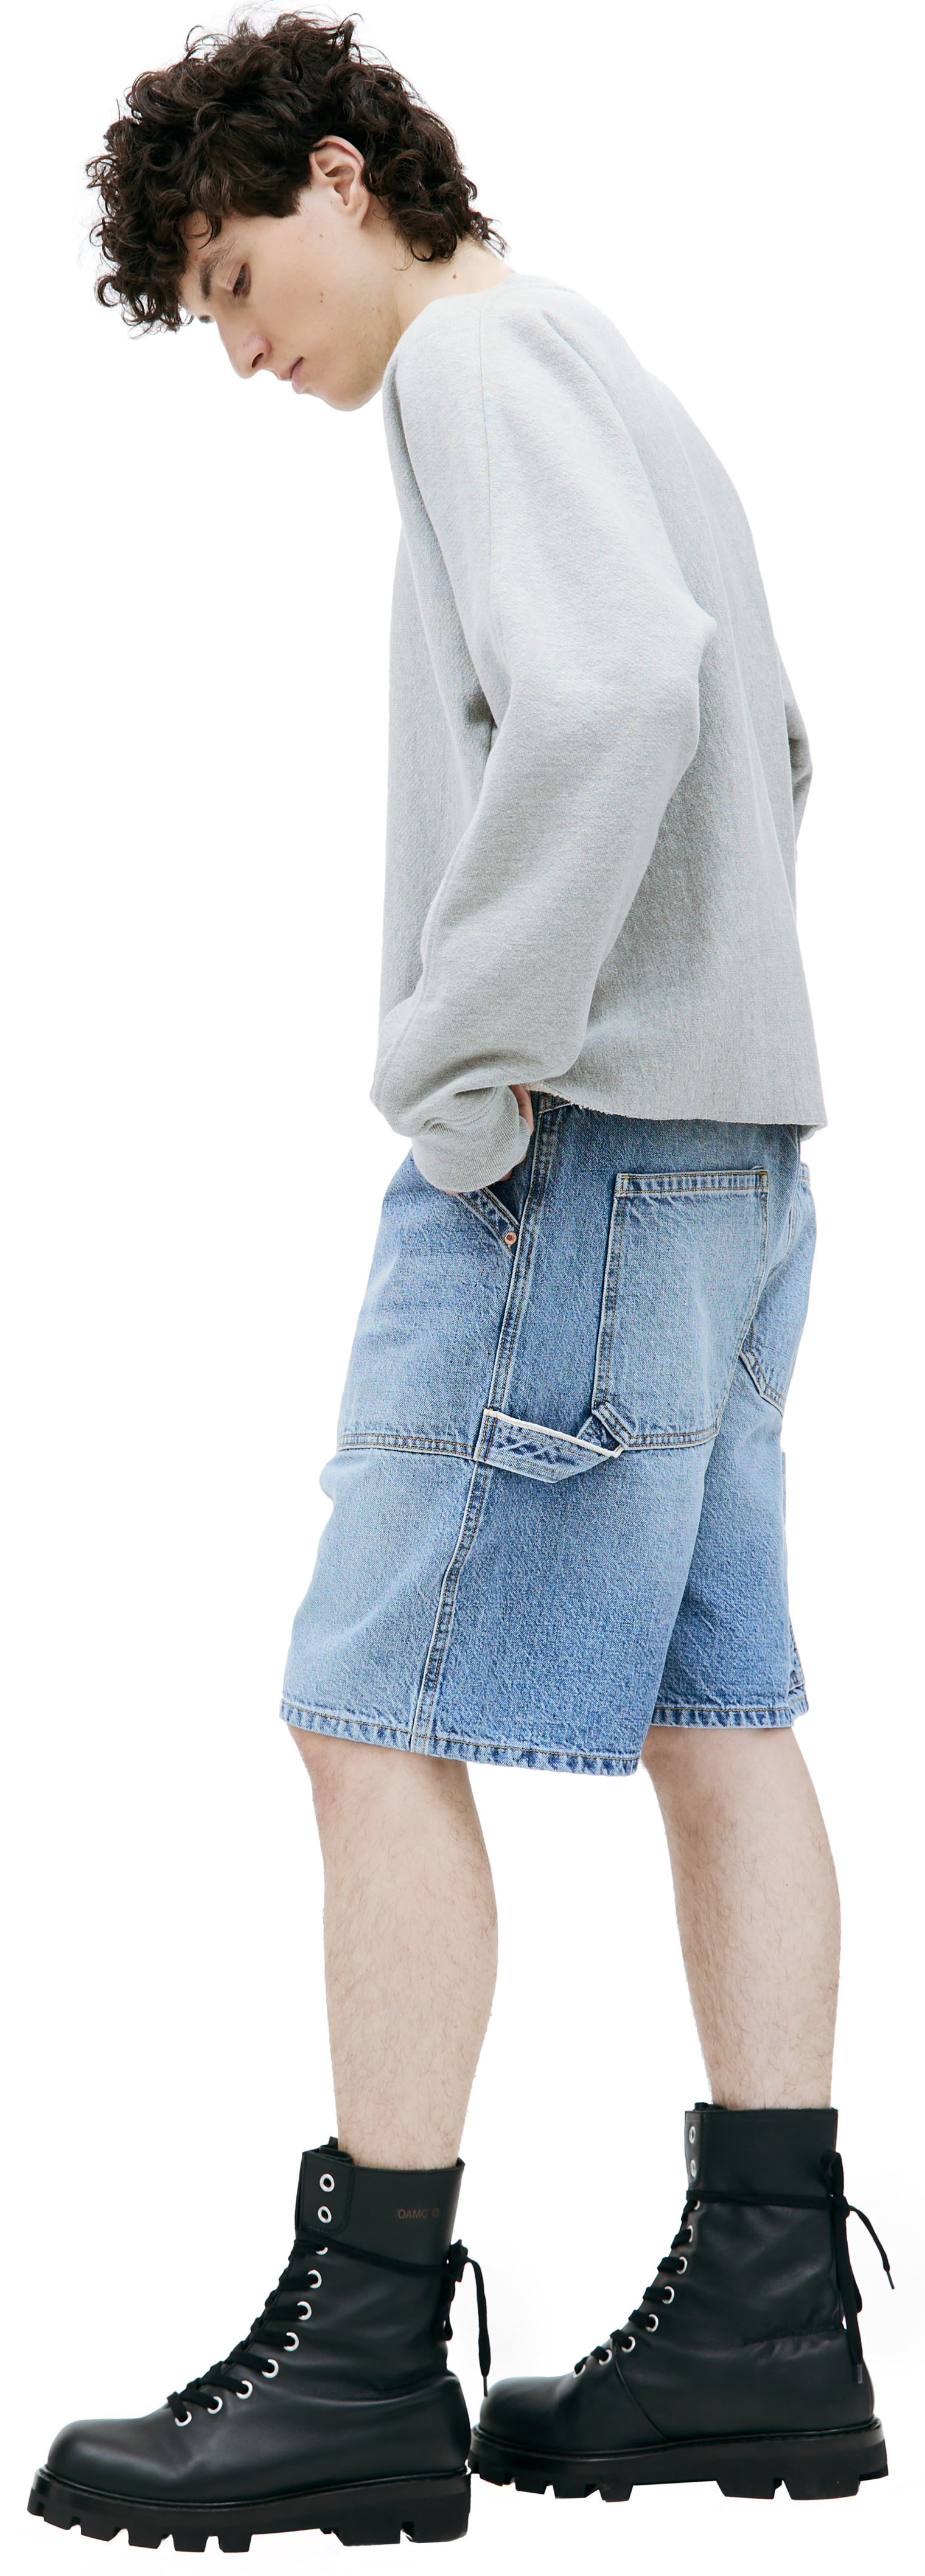 BTFL Denim shorts with pockets